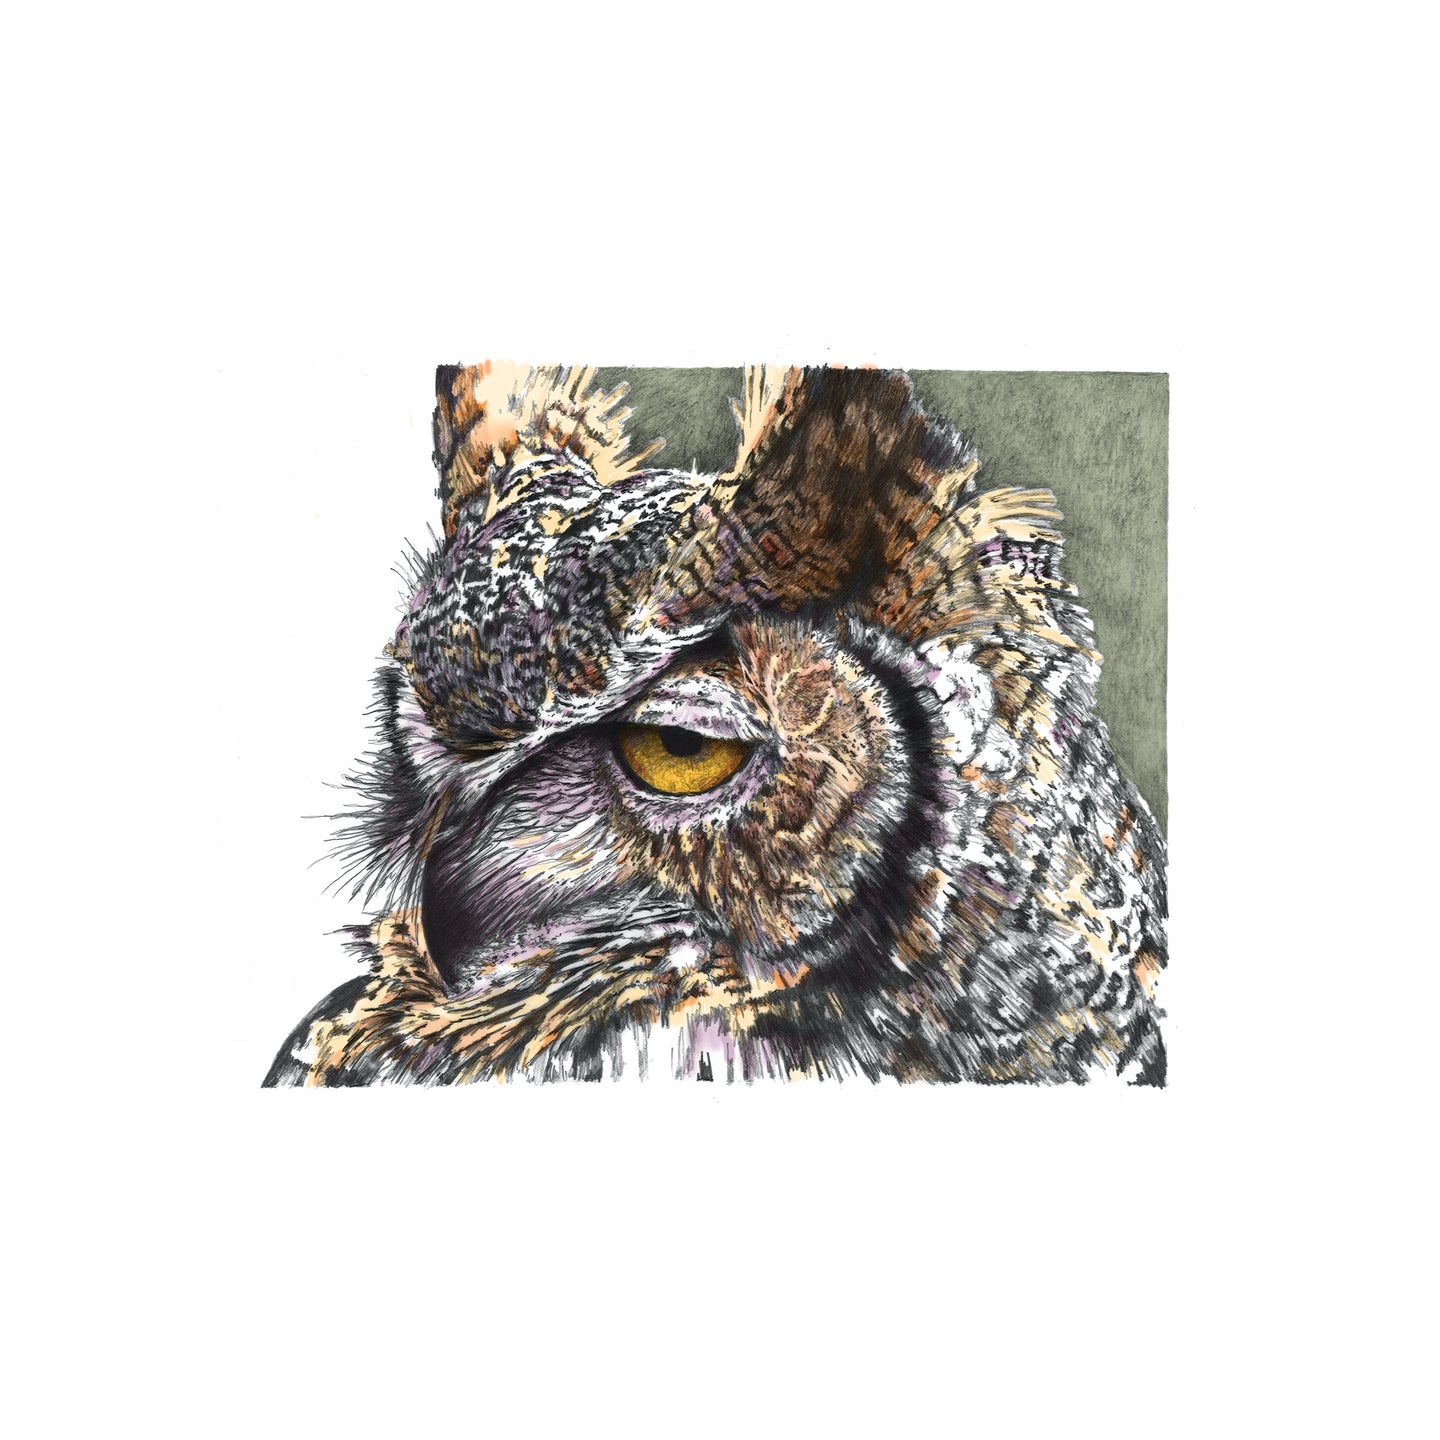 Great Horned Owl, Badlands National Park, South Dakota